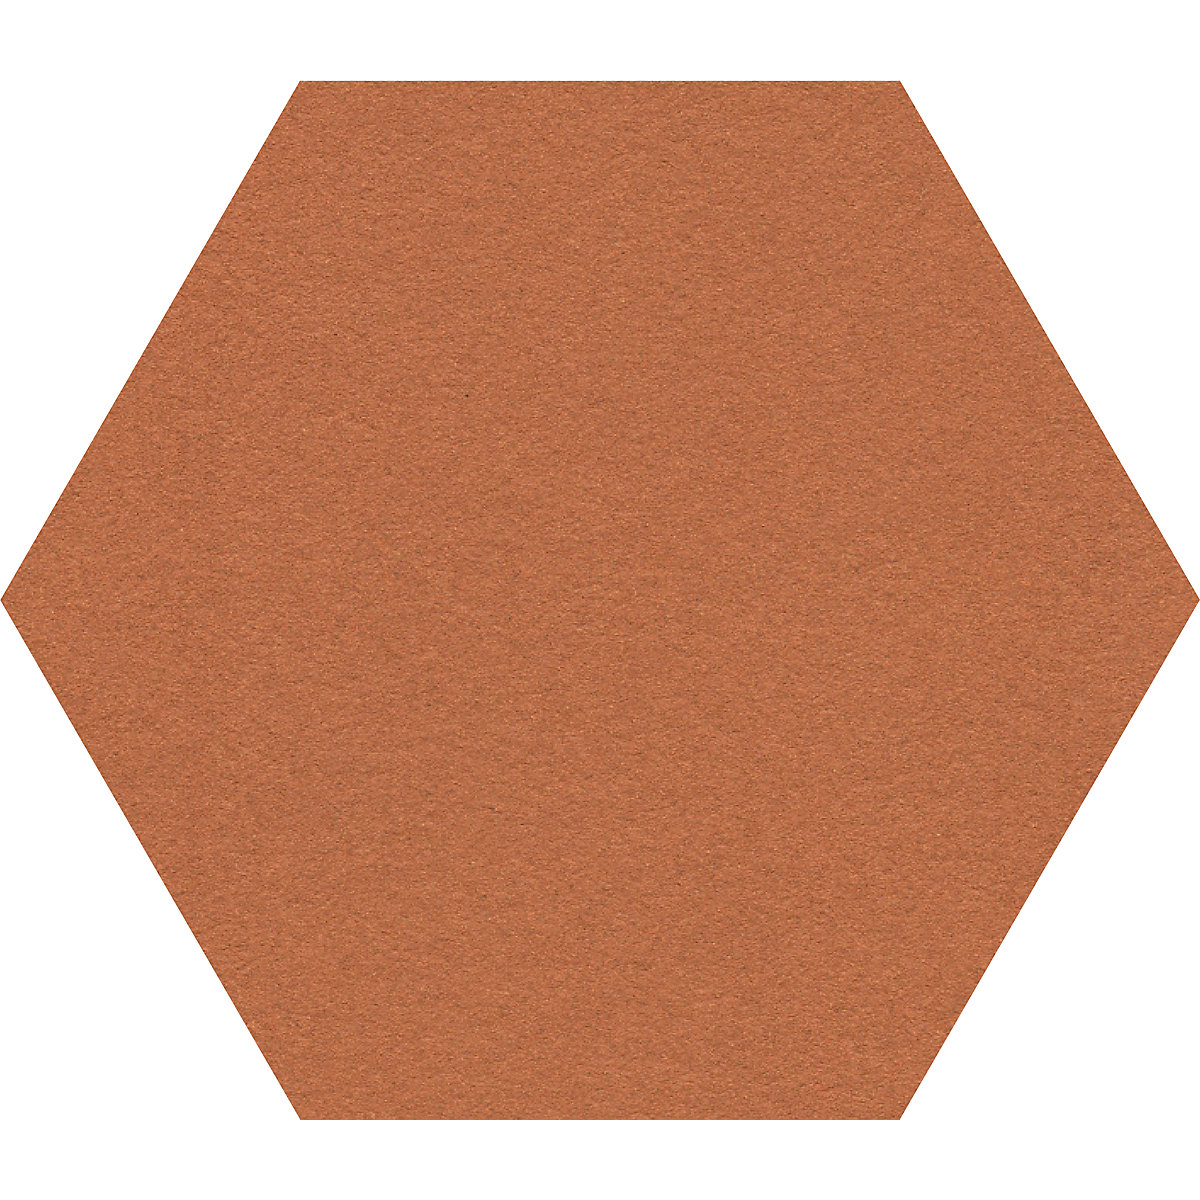 Tableau autocollant du liège Hexagon Natural - Magasin de liège France